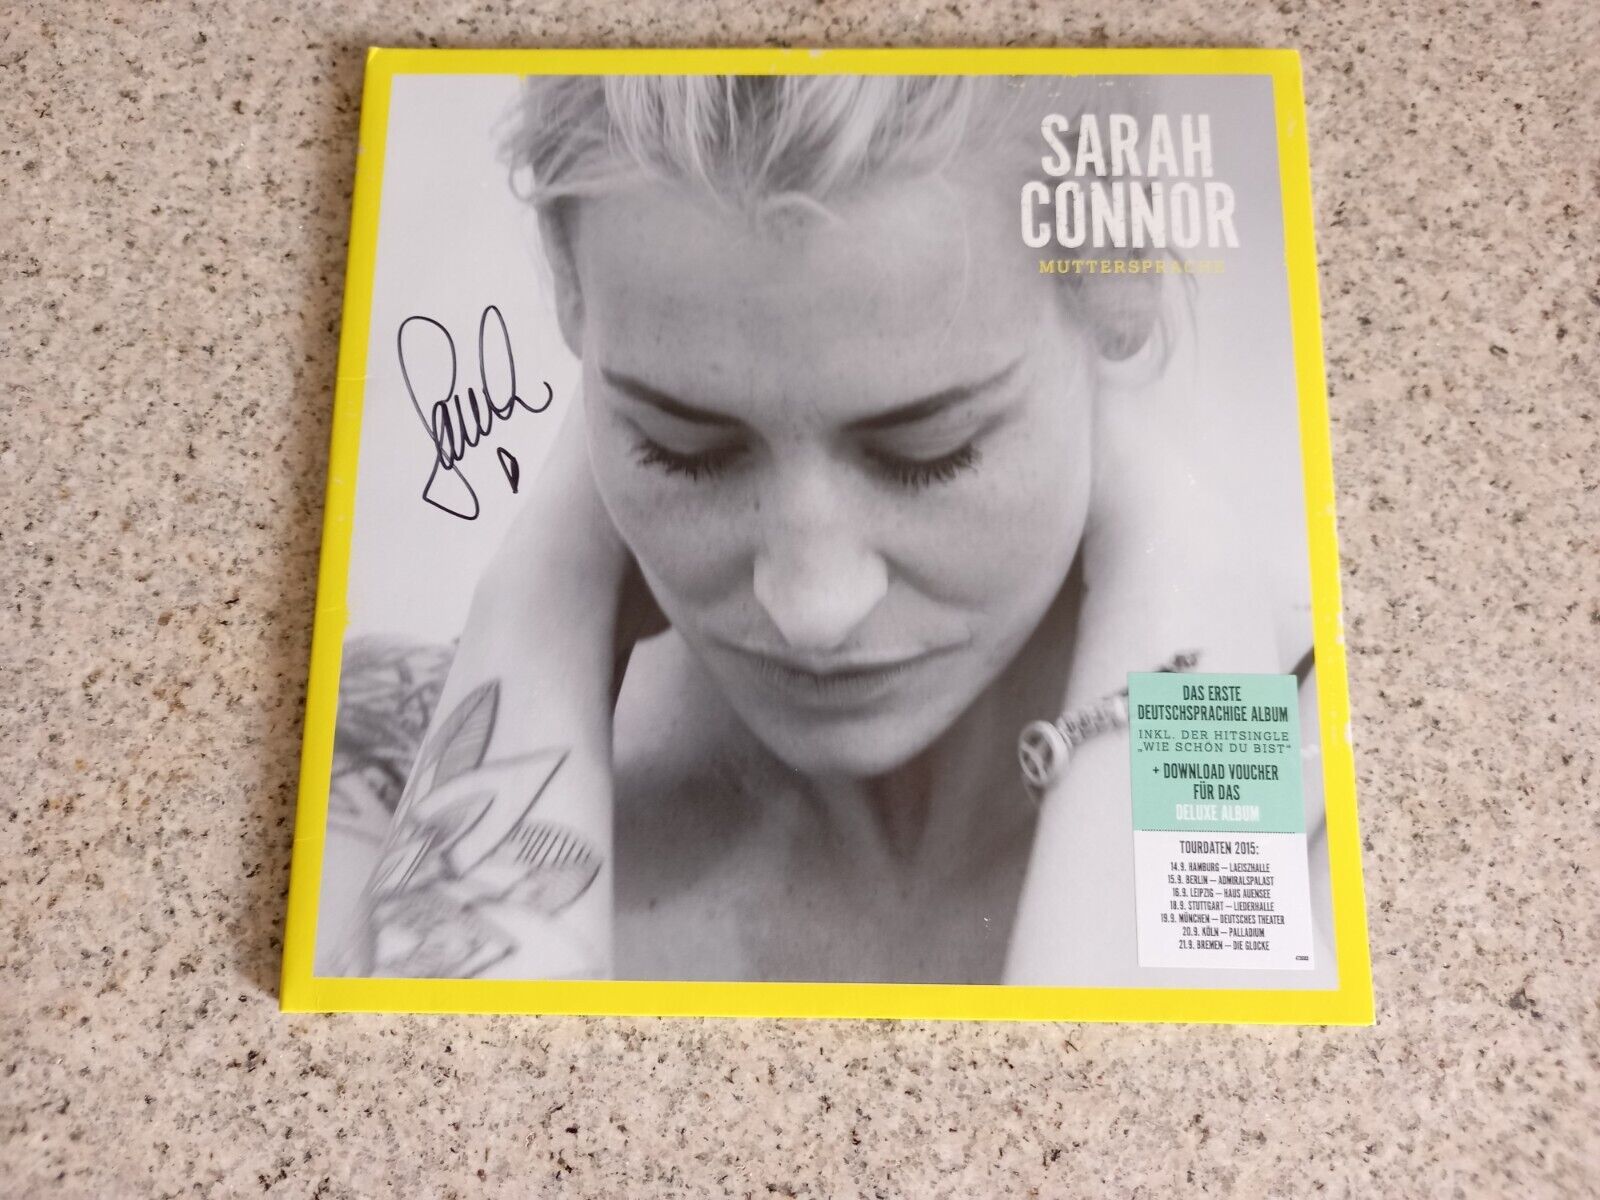 Sarah Connor - Muttersprache, 2Vinyl LP, first press, black, limitiert signiert